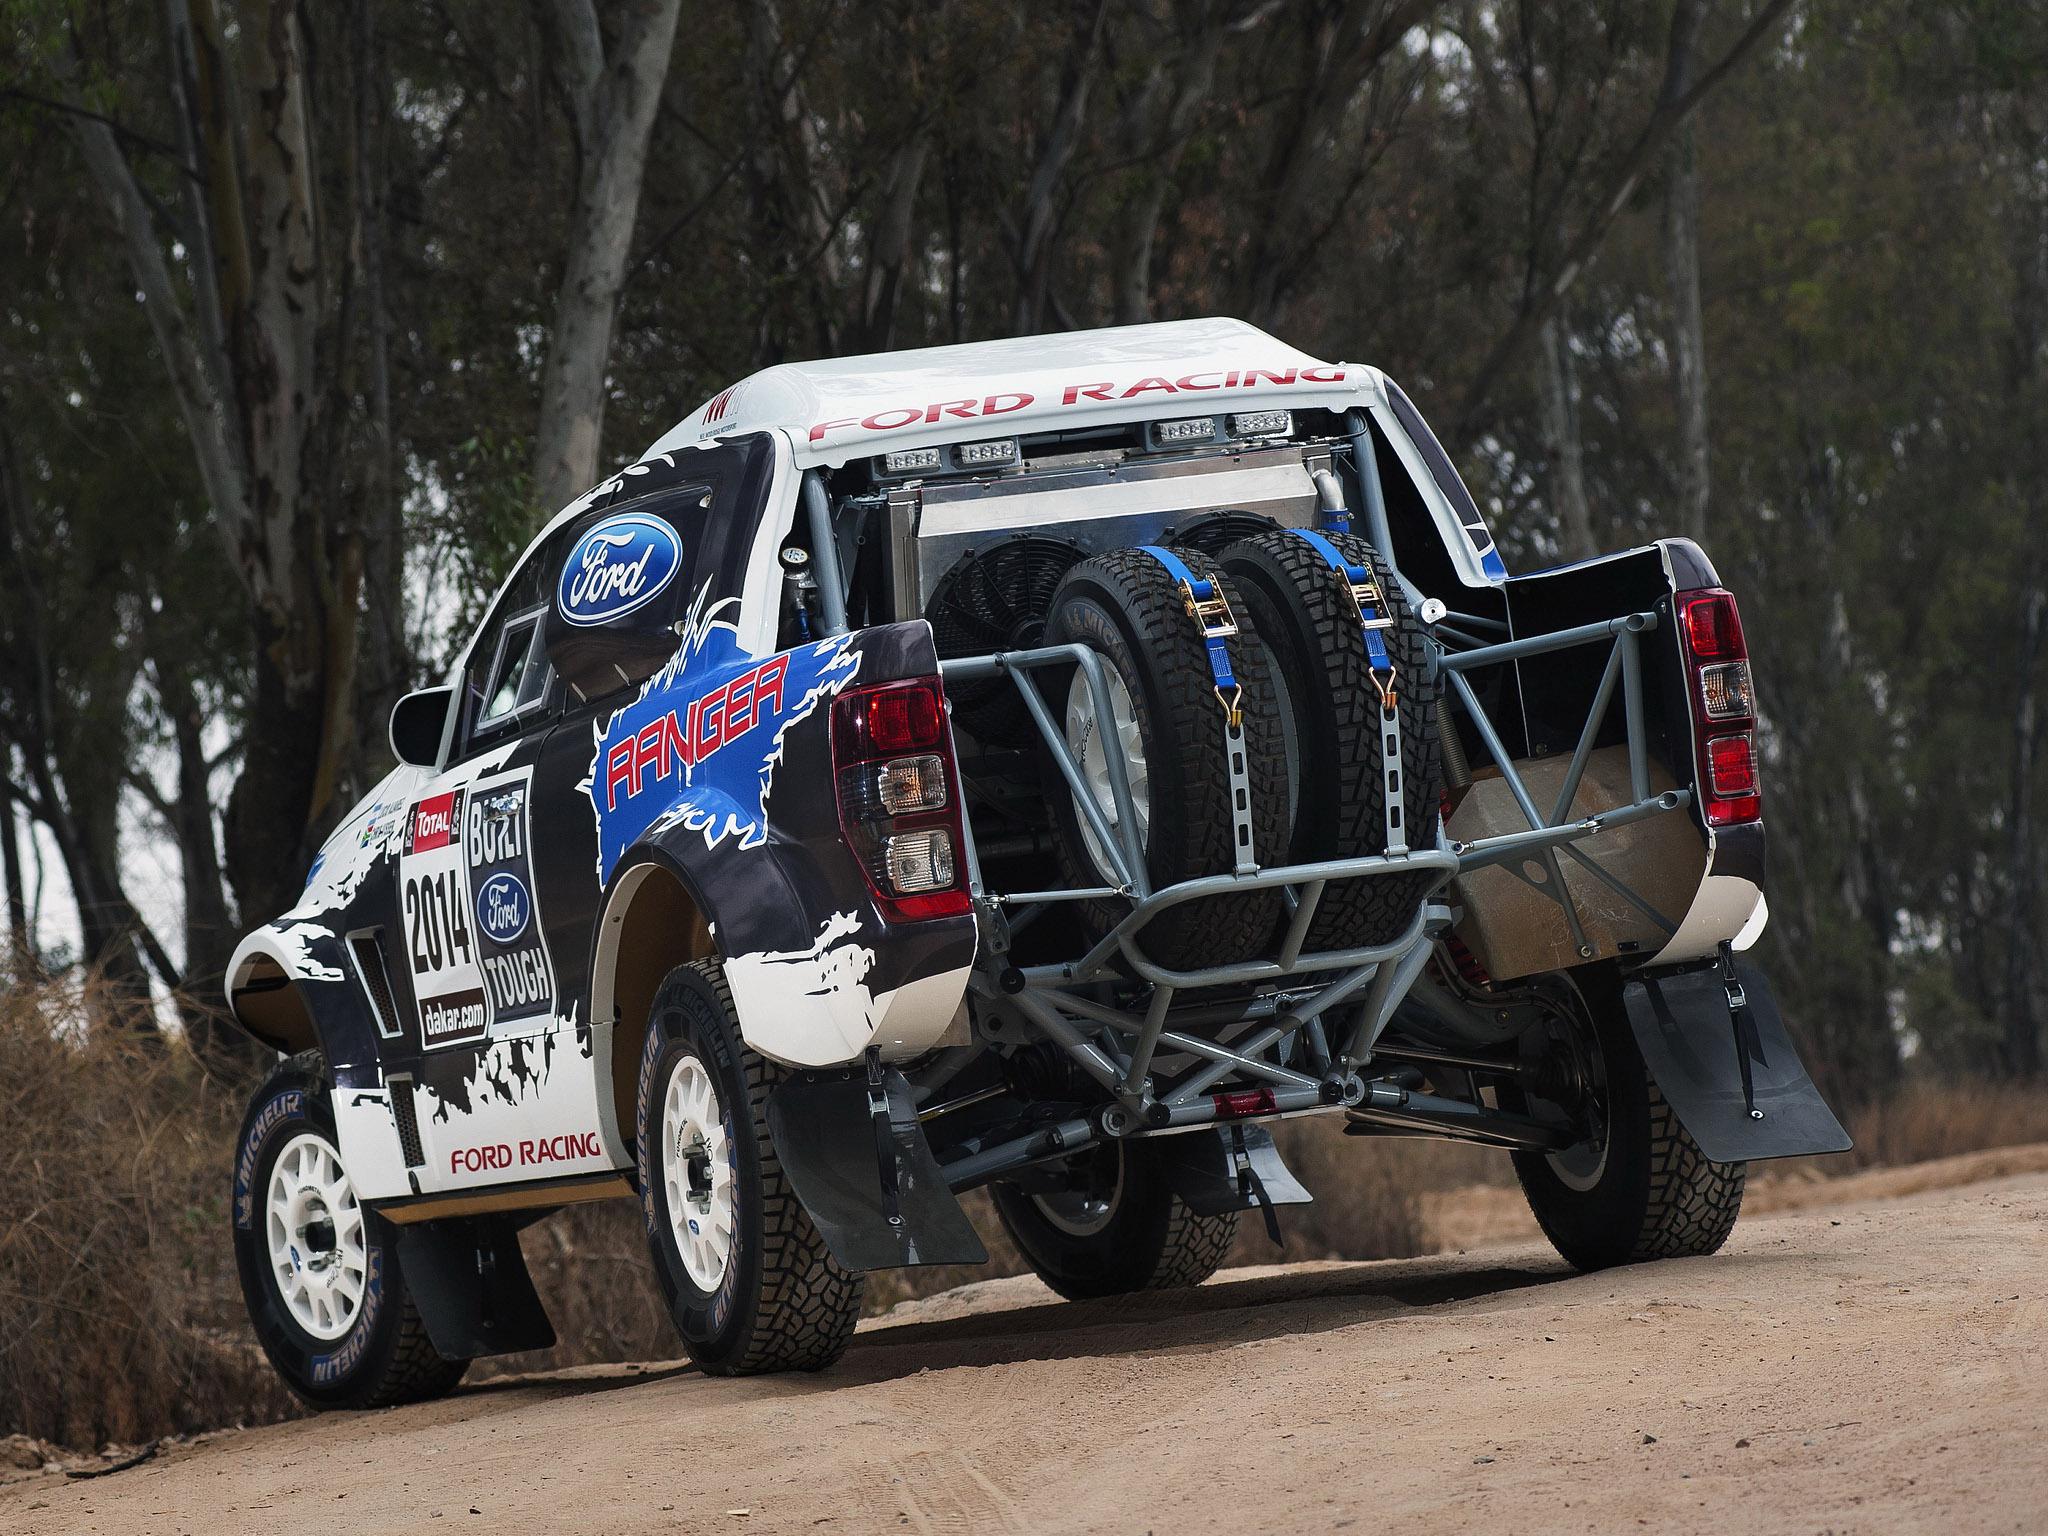 Hd 2014 Ford Ranger Dakar Rally Offroad Truck Race - Dakar Rally Ford Ranger - HD Wallpaper 